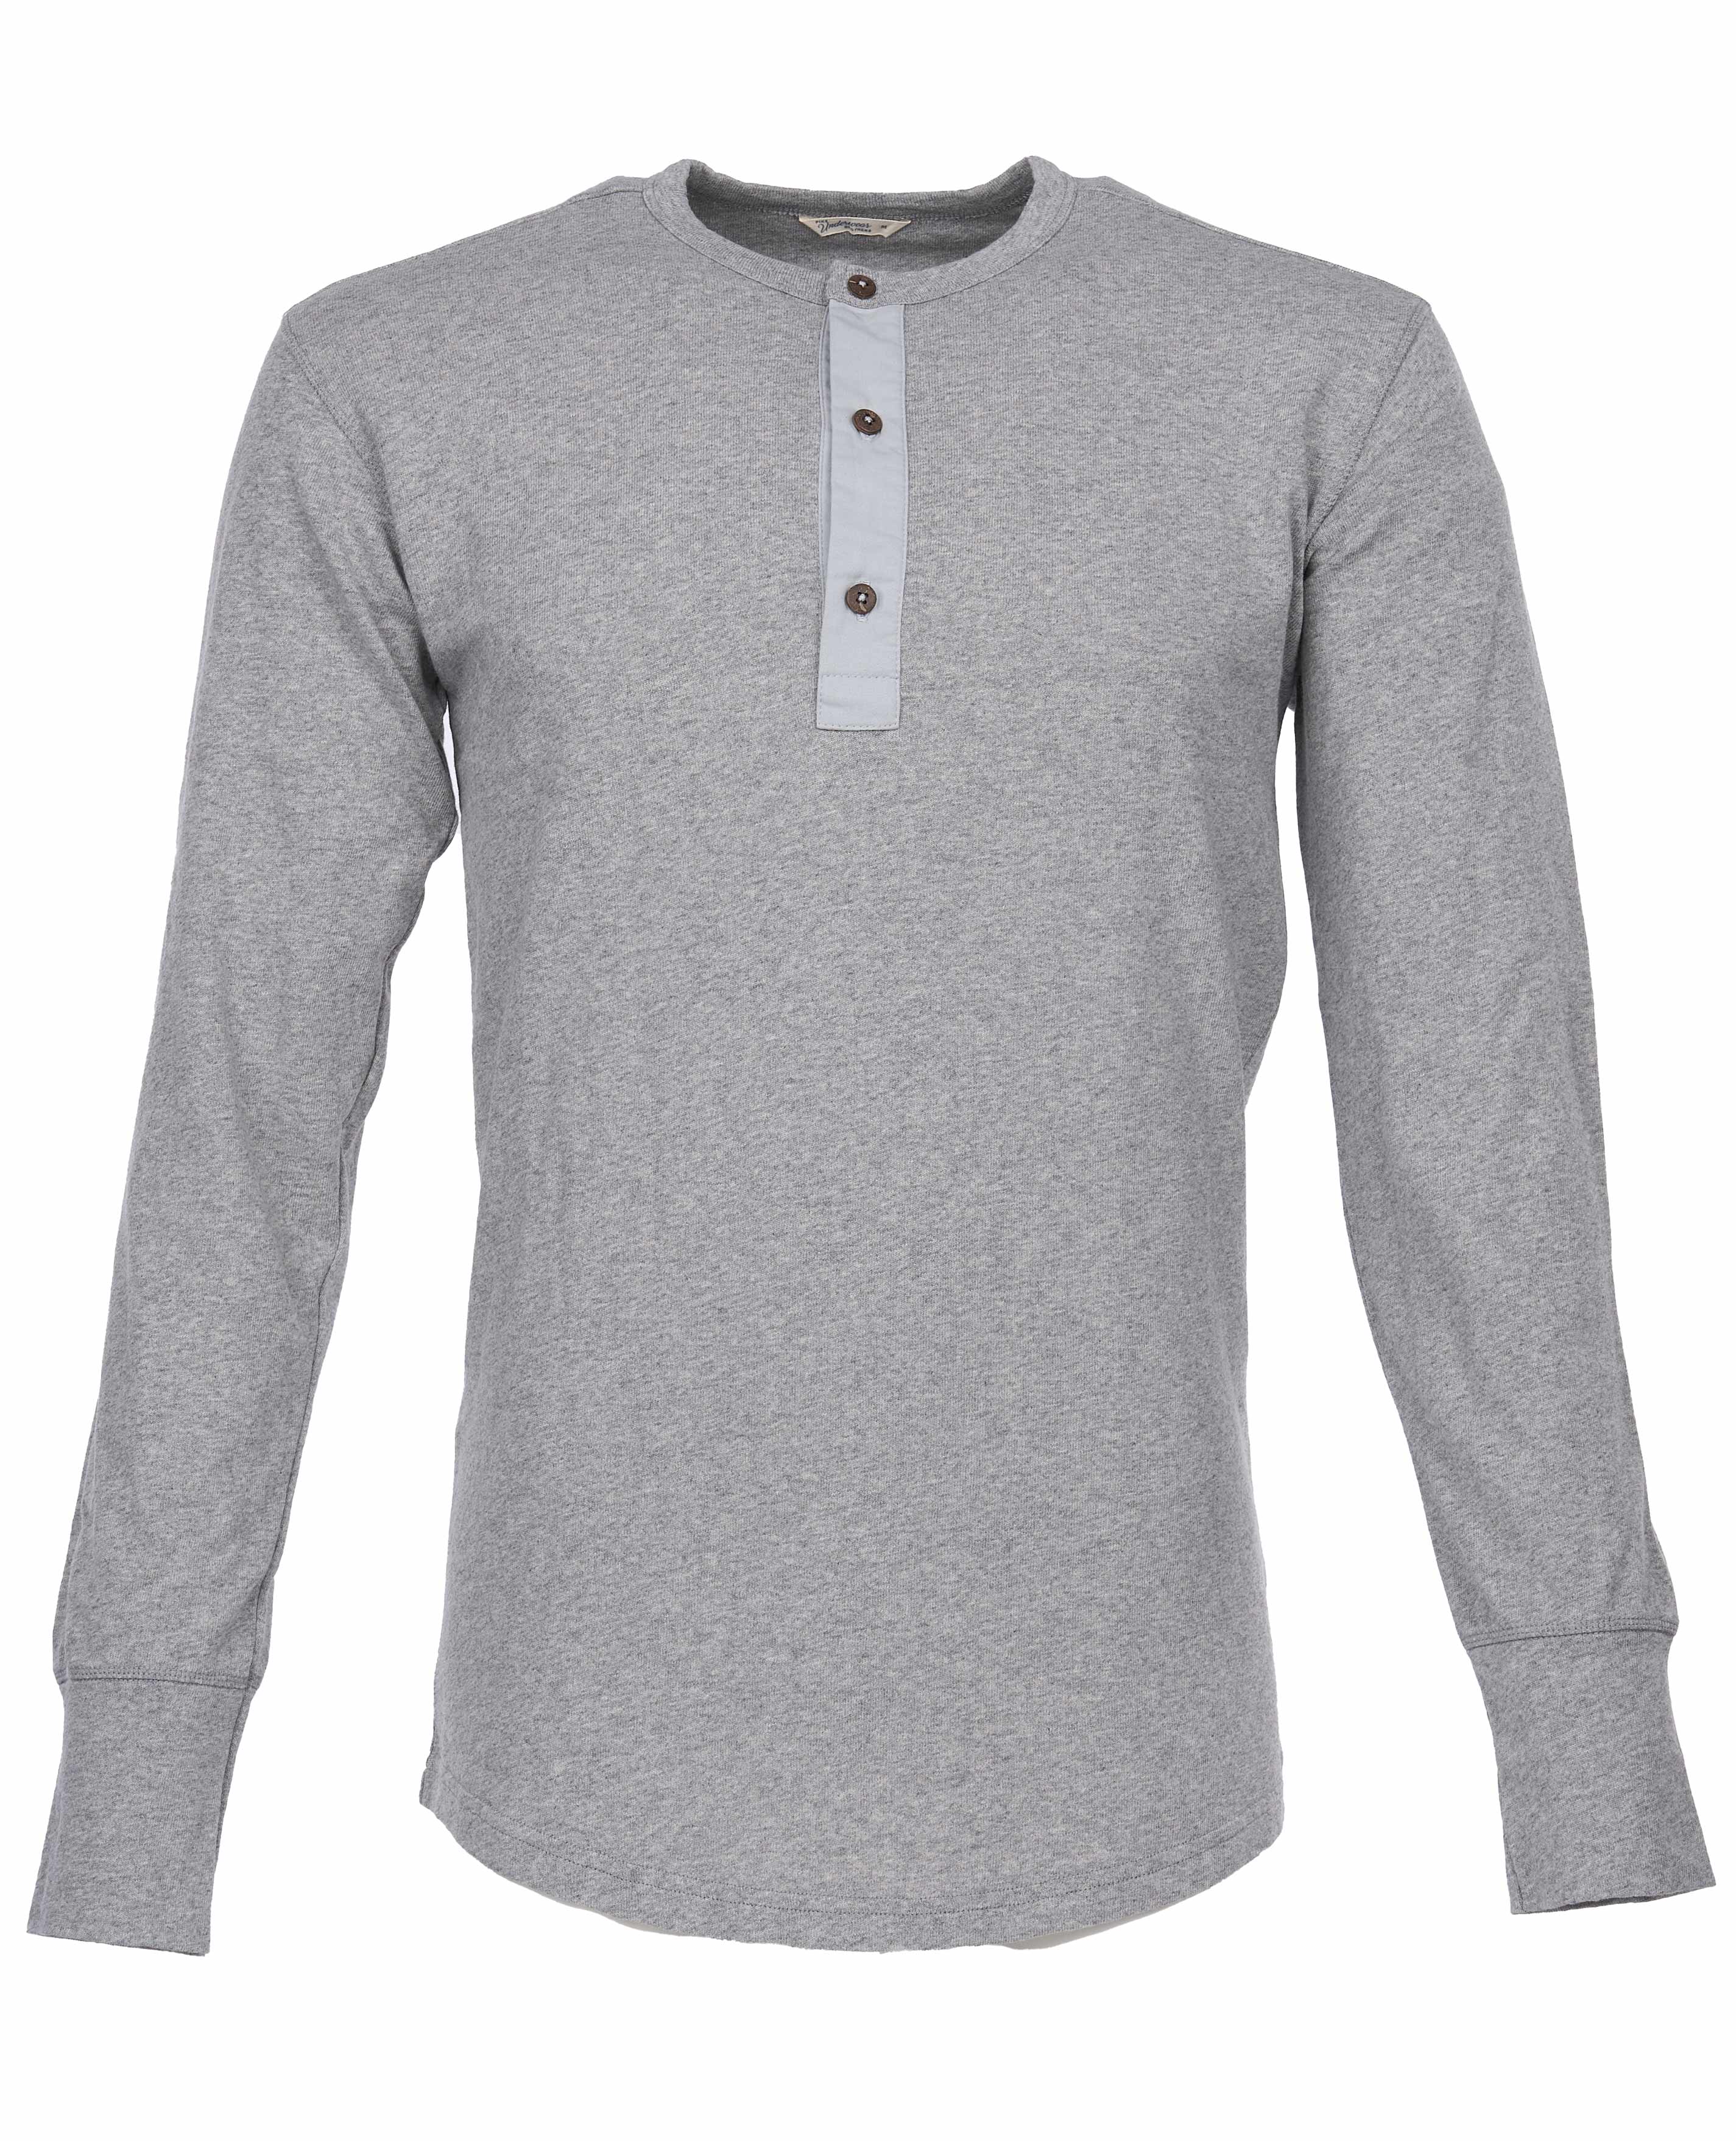 1927 Henley Shirt long sleeve light grey